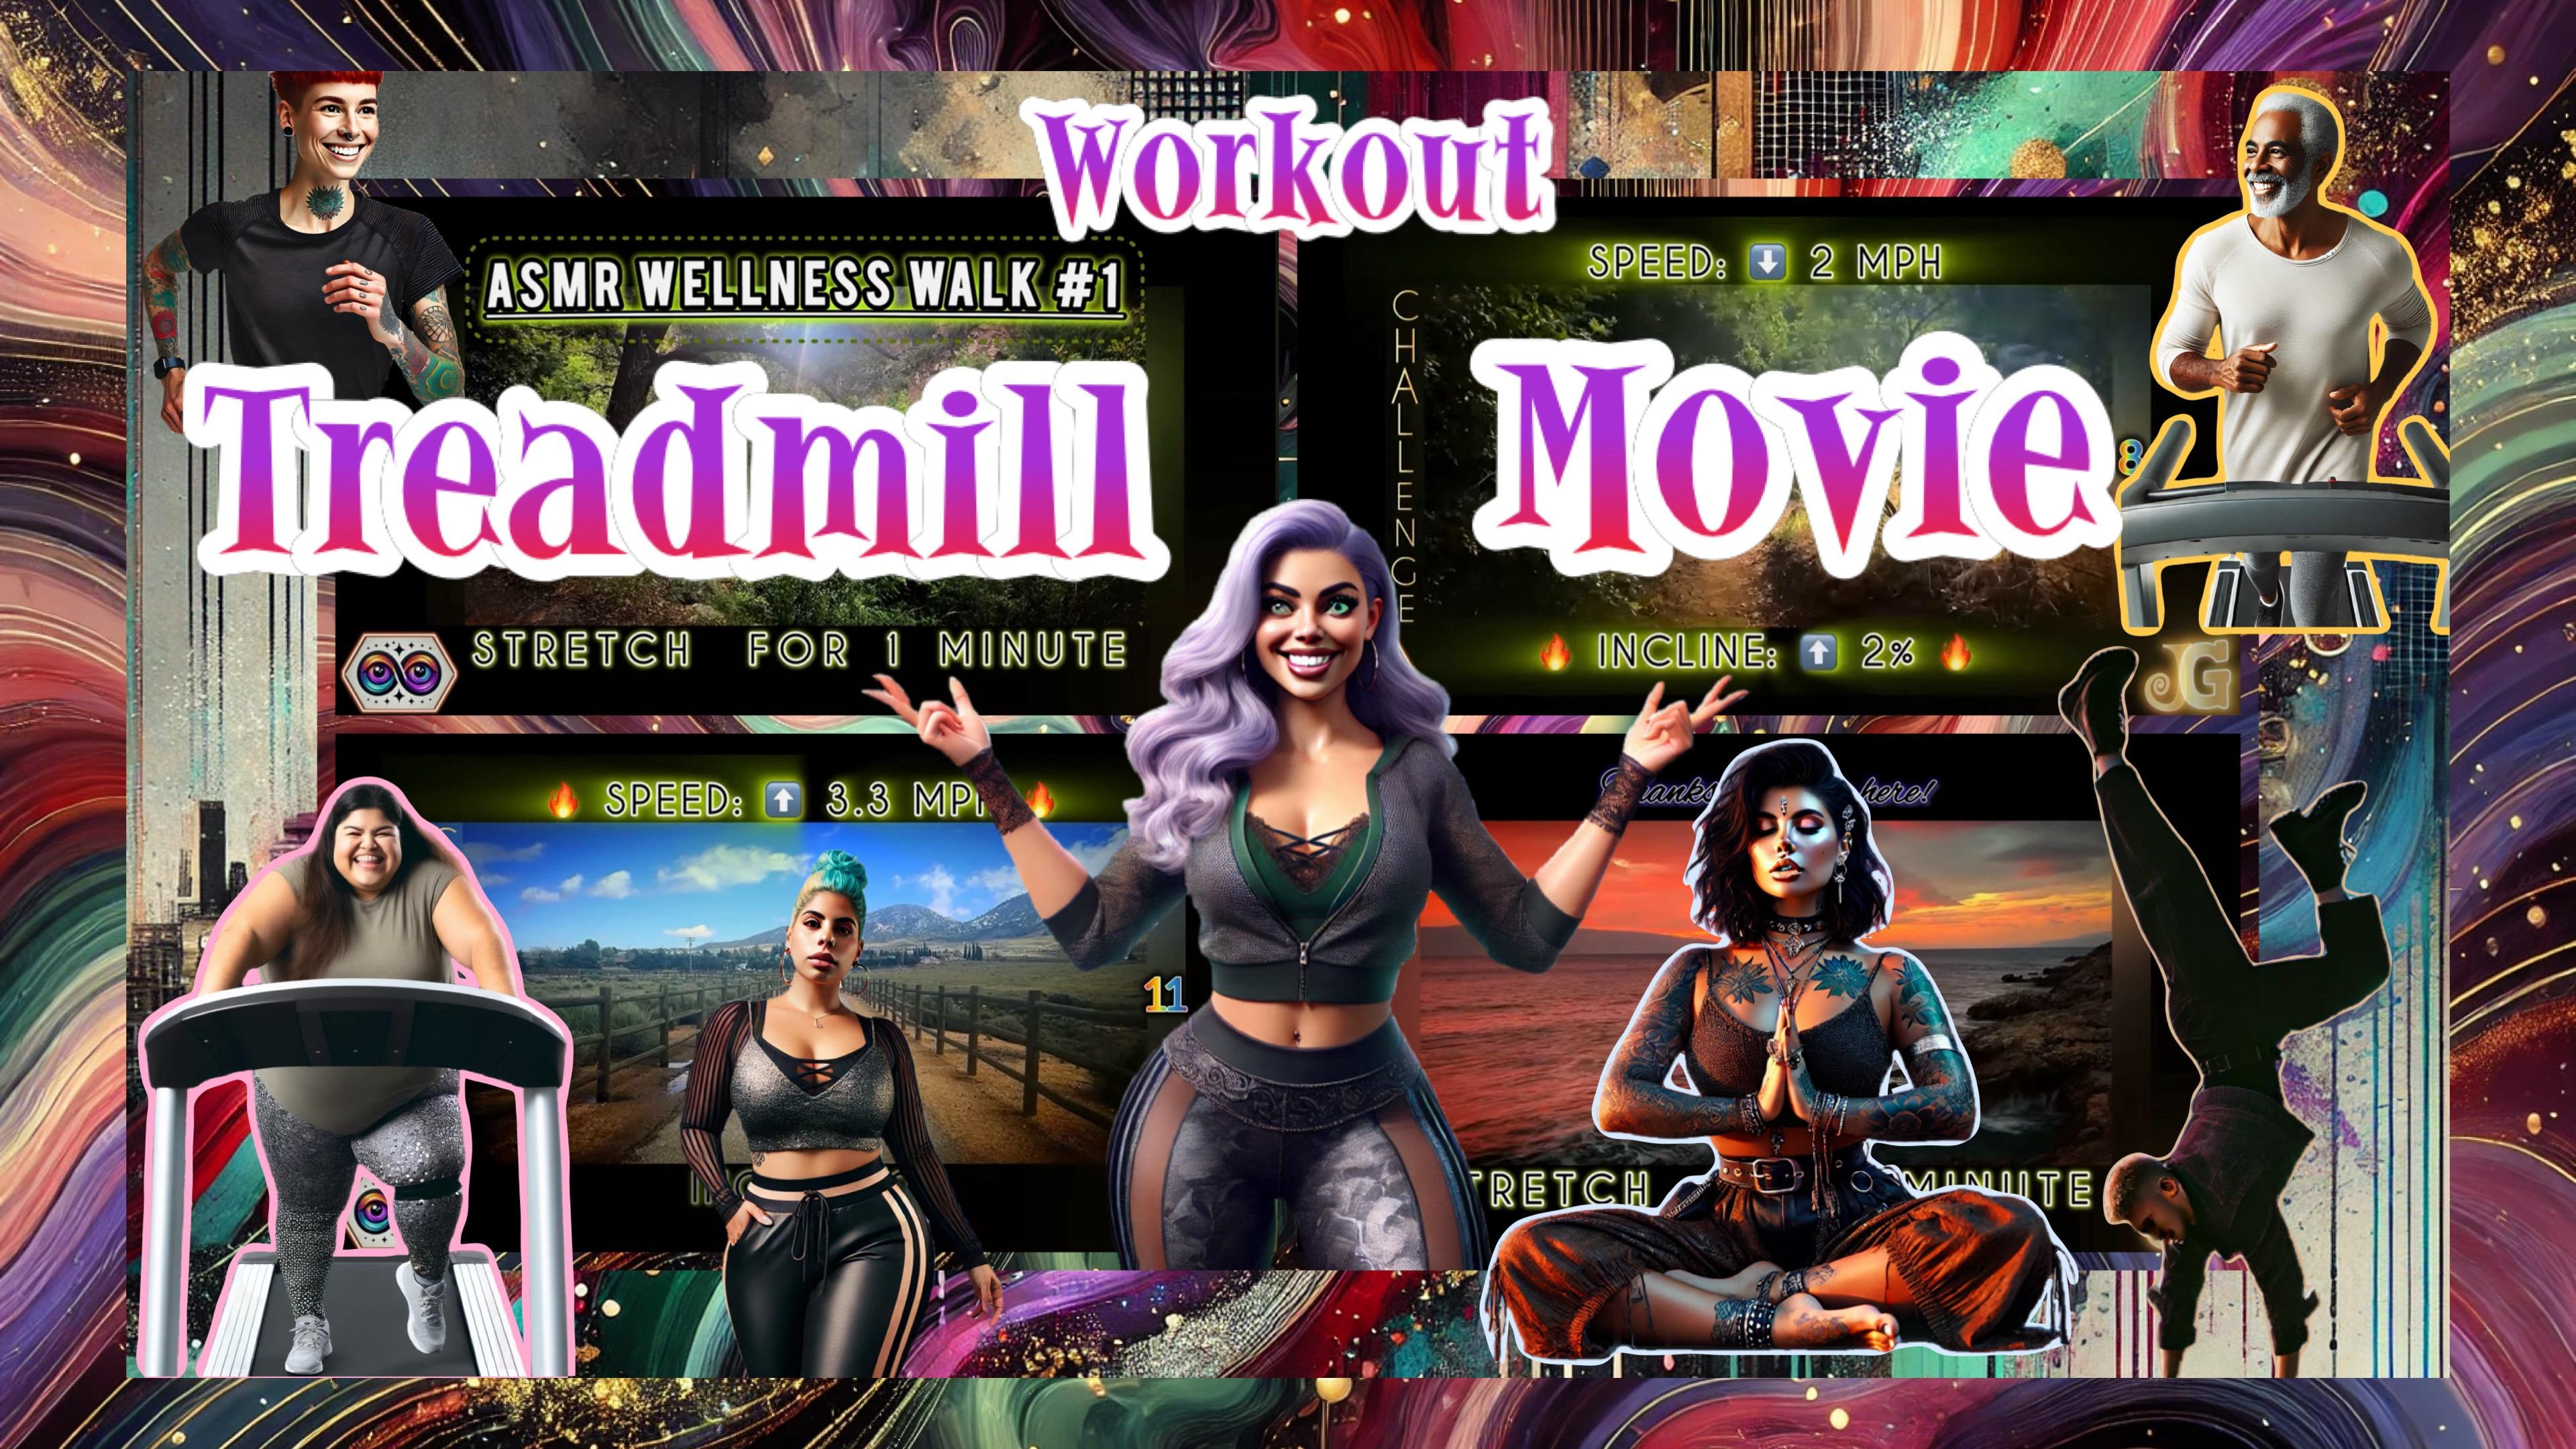 ASMR Wellness Walk #1 (Treadmill Workout) 